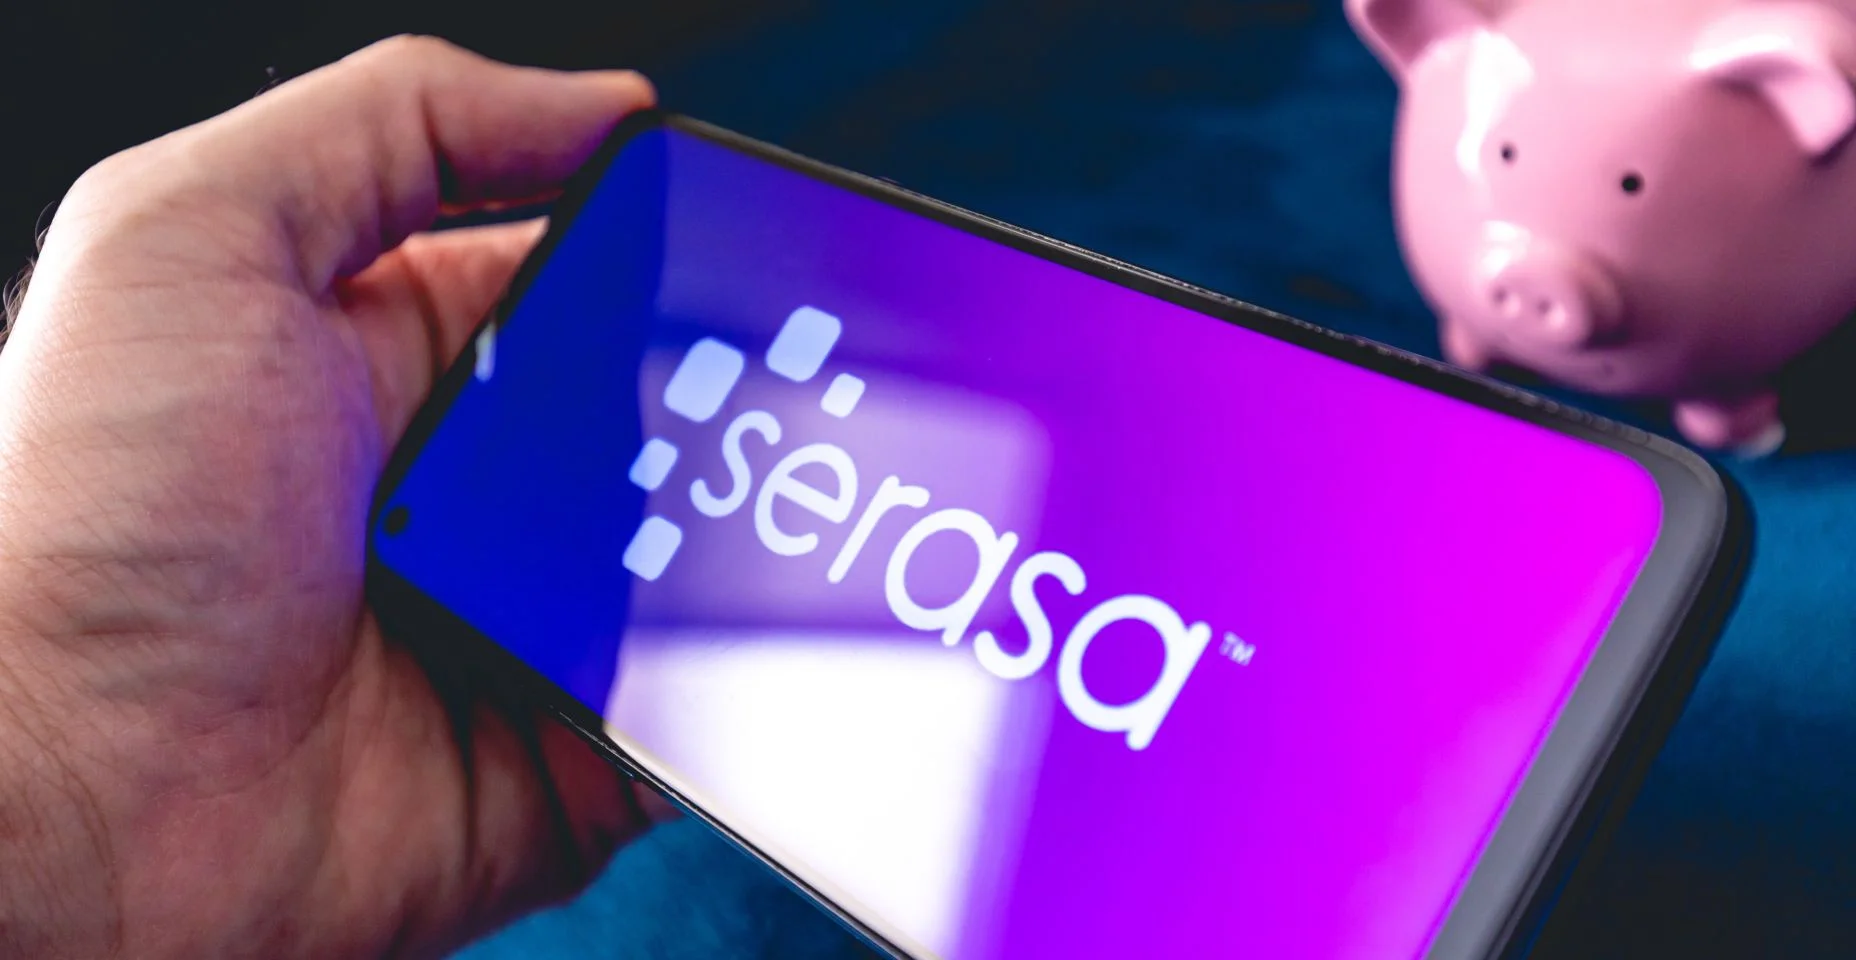 Um homem segurando um telefone celular com a logo da empresa brasileira Serasa.